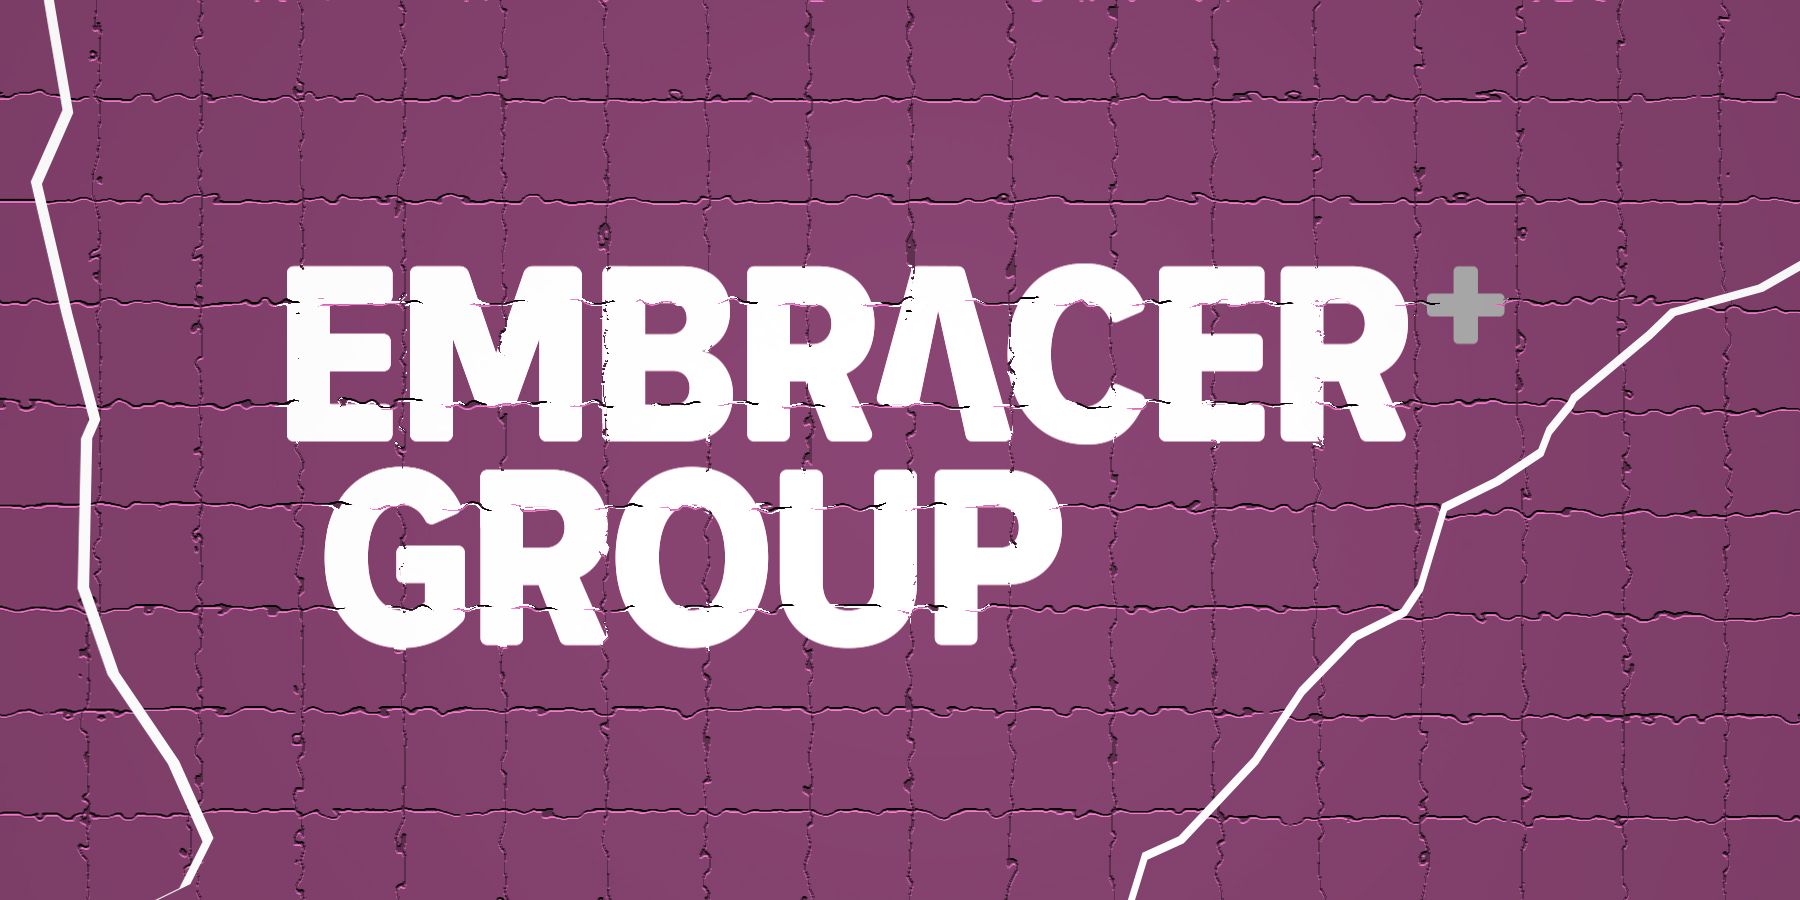 Embracer Group logo on cracked dark-purple tiles